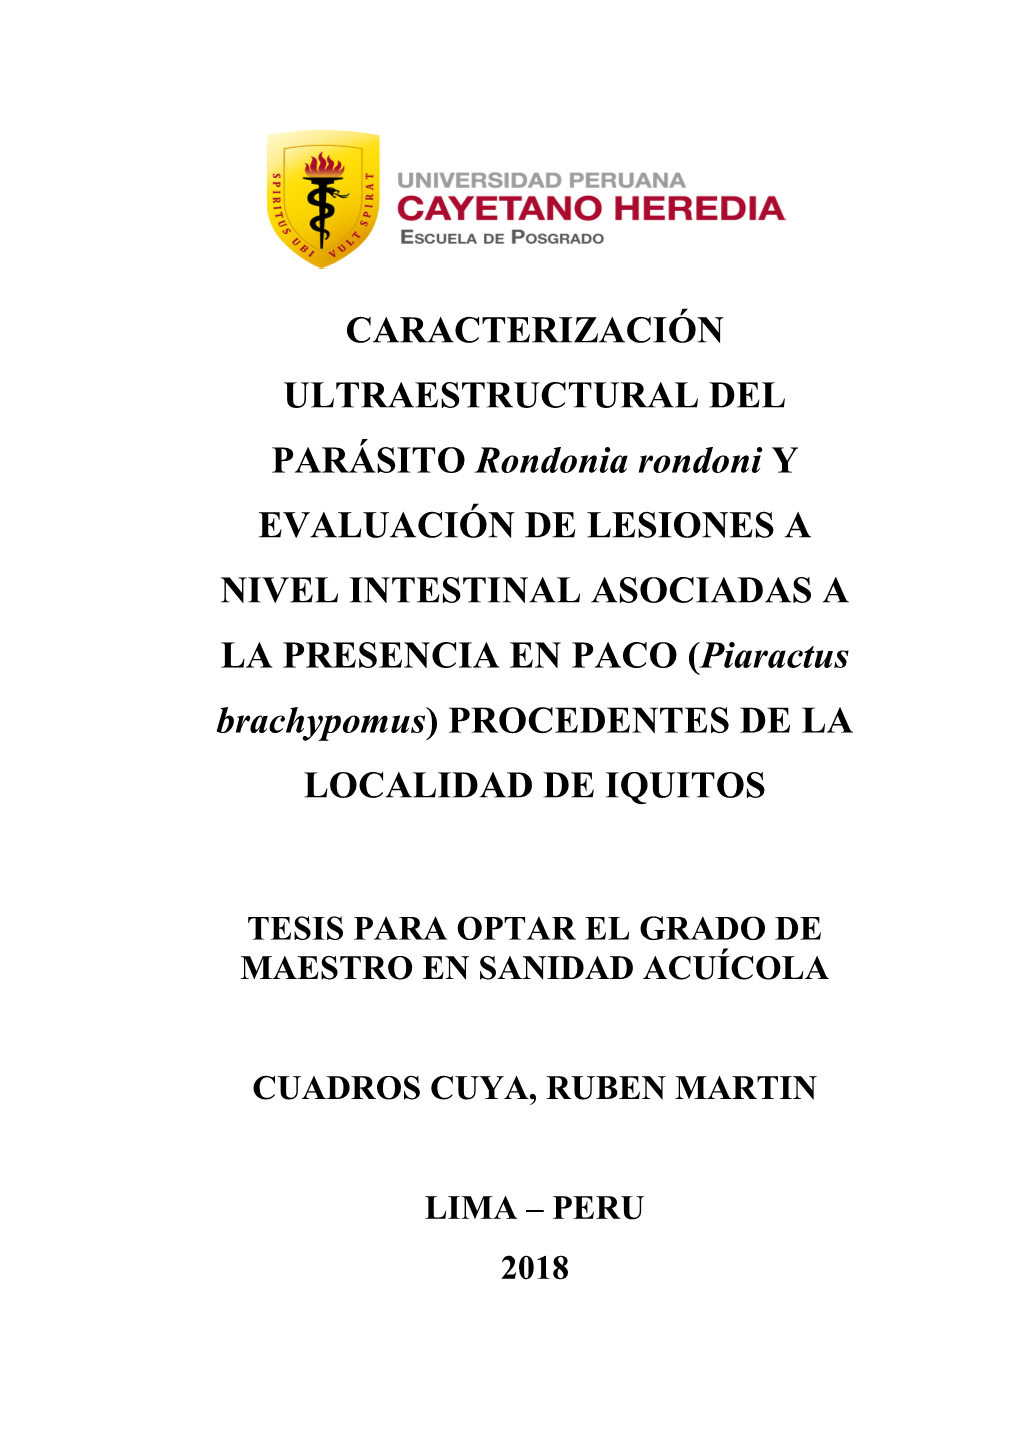 CARACTERIZACIÓN ULTRAESTRUCTURAL DEL PARÁSITO Rondonia Rondoni Y EVALUACIÓN DE LESIONES a NIVEL INTESTINAL ASOCIADAS a LA